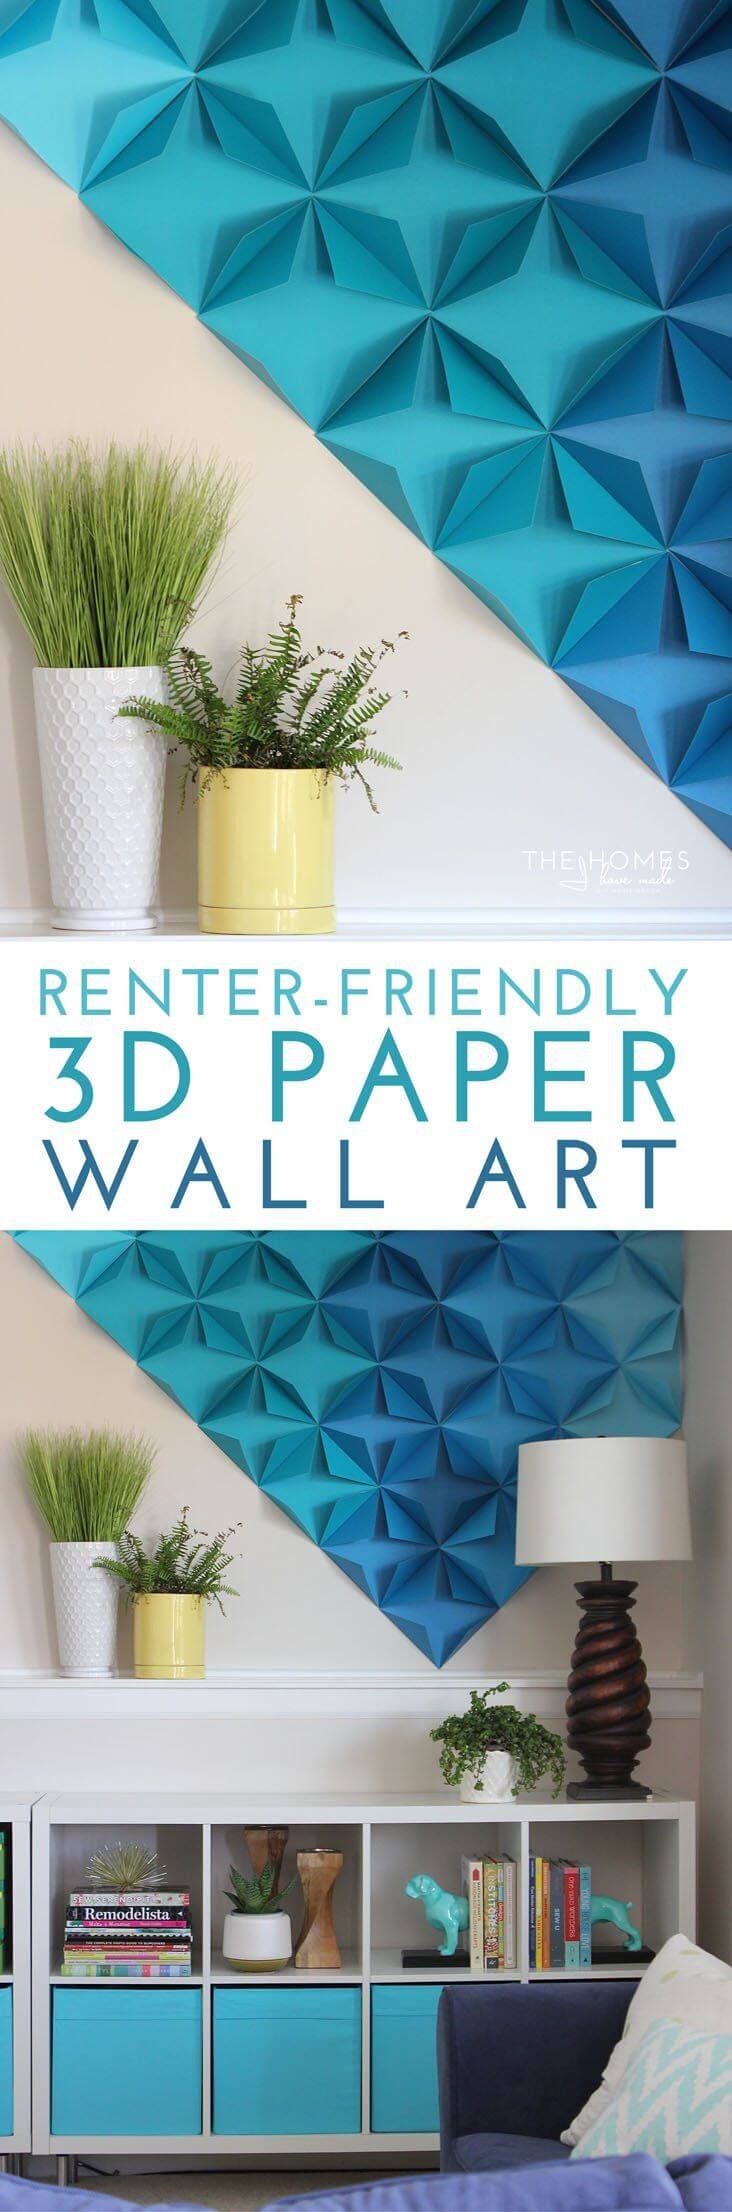 DIY 3D Paper Wall Art